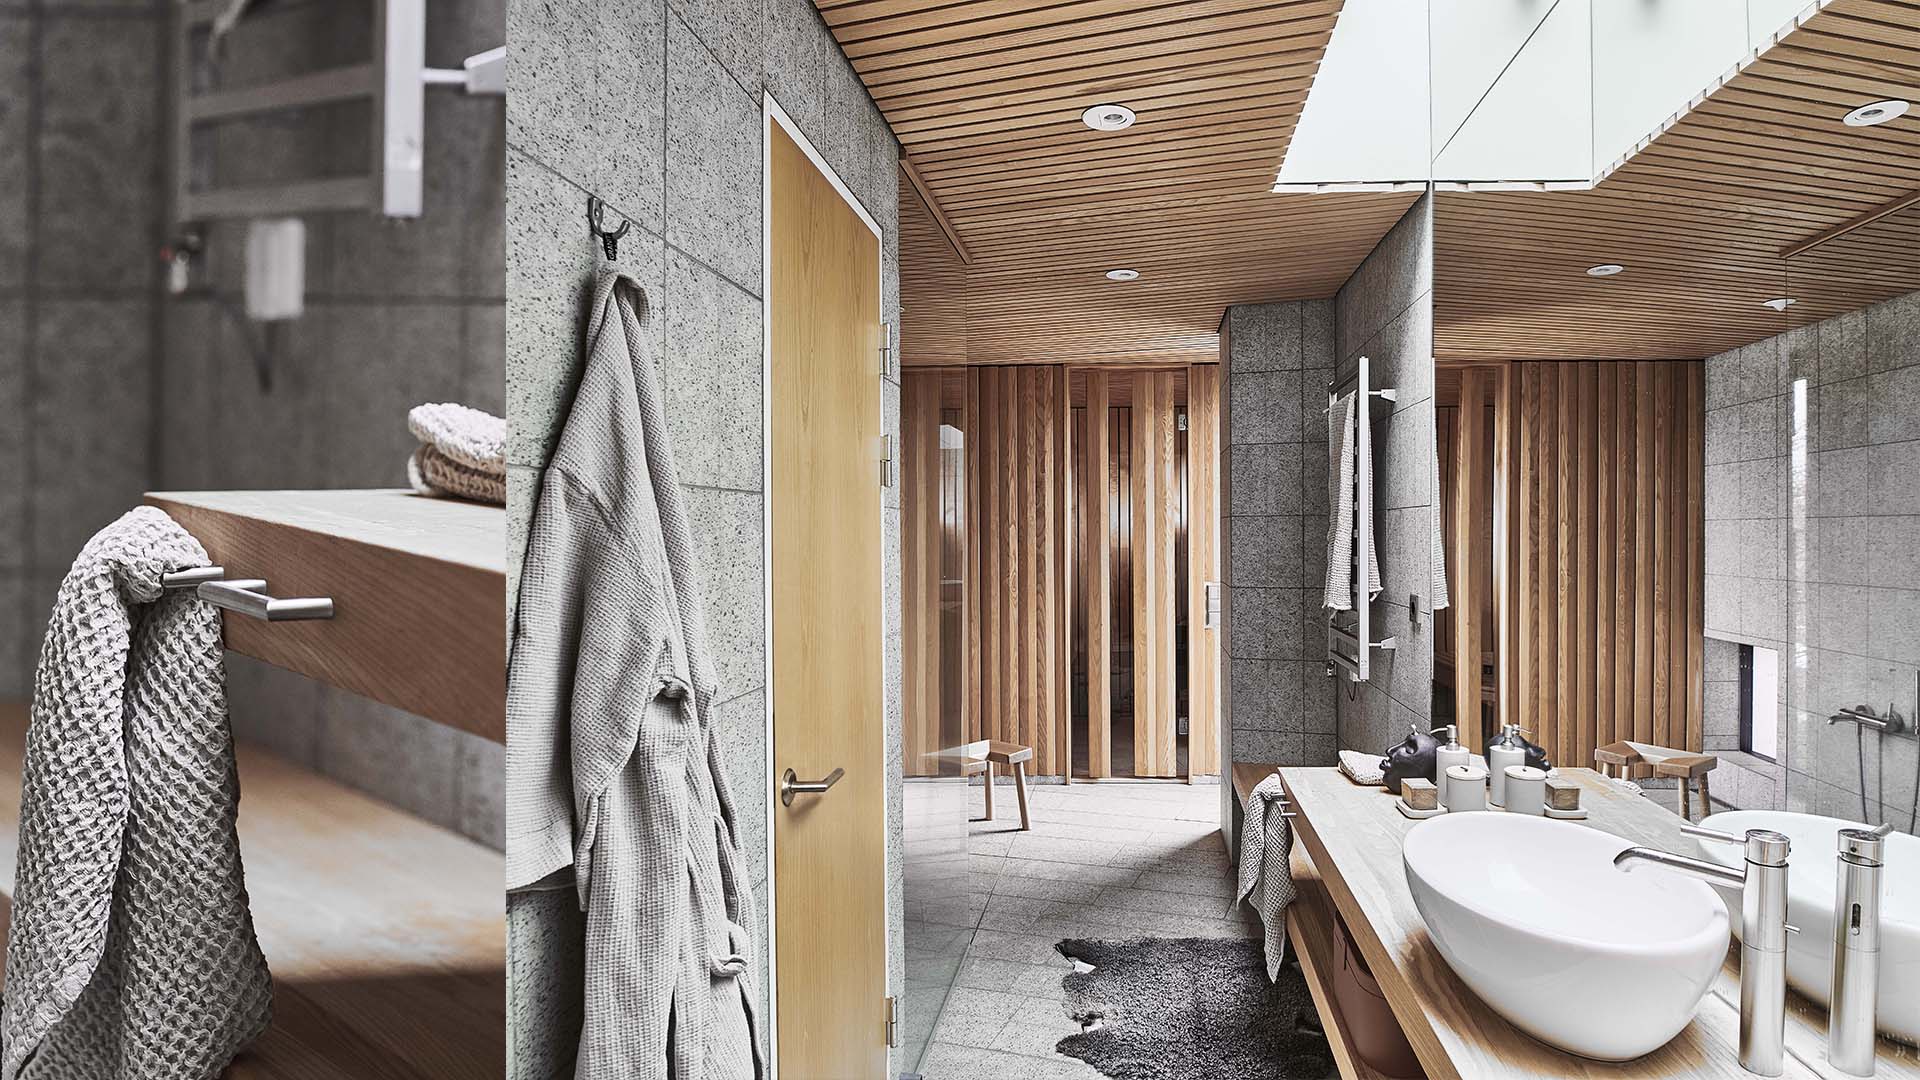 badrum i modern stil med krok mot vägg, dörrhandtag för toalettdörr och krok för handduk